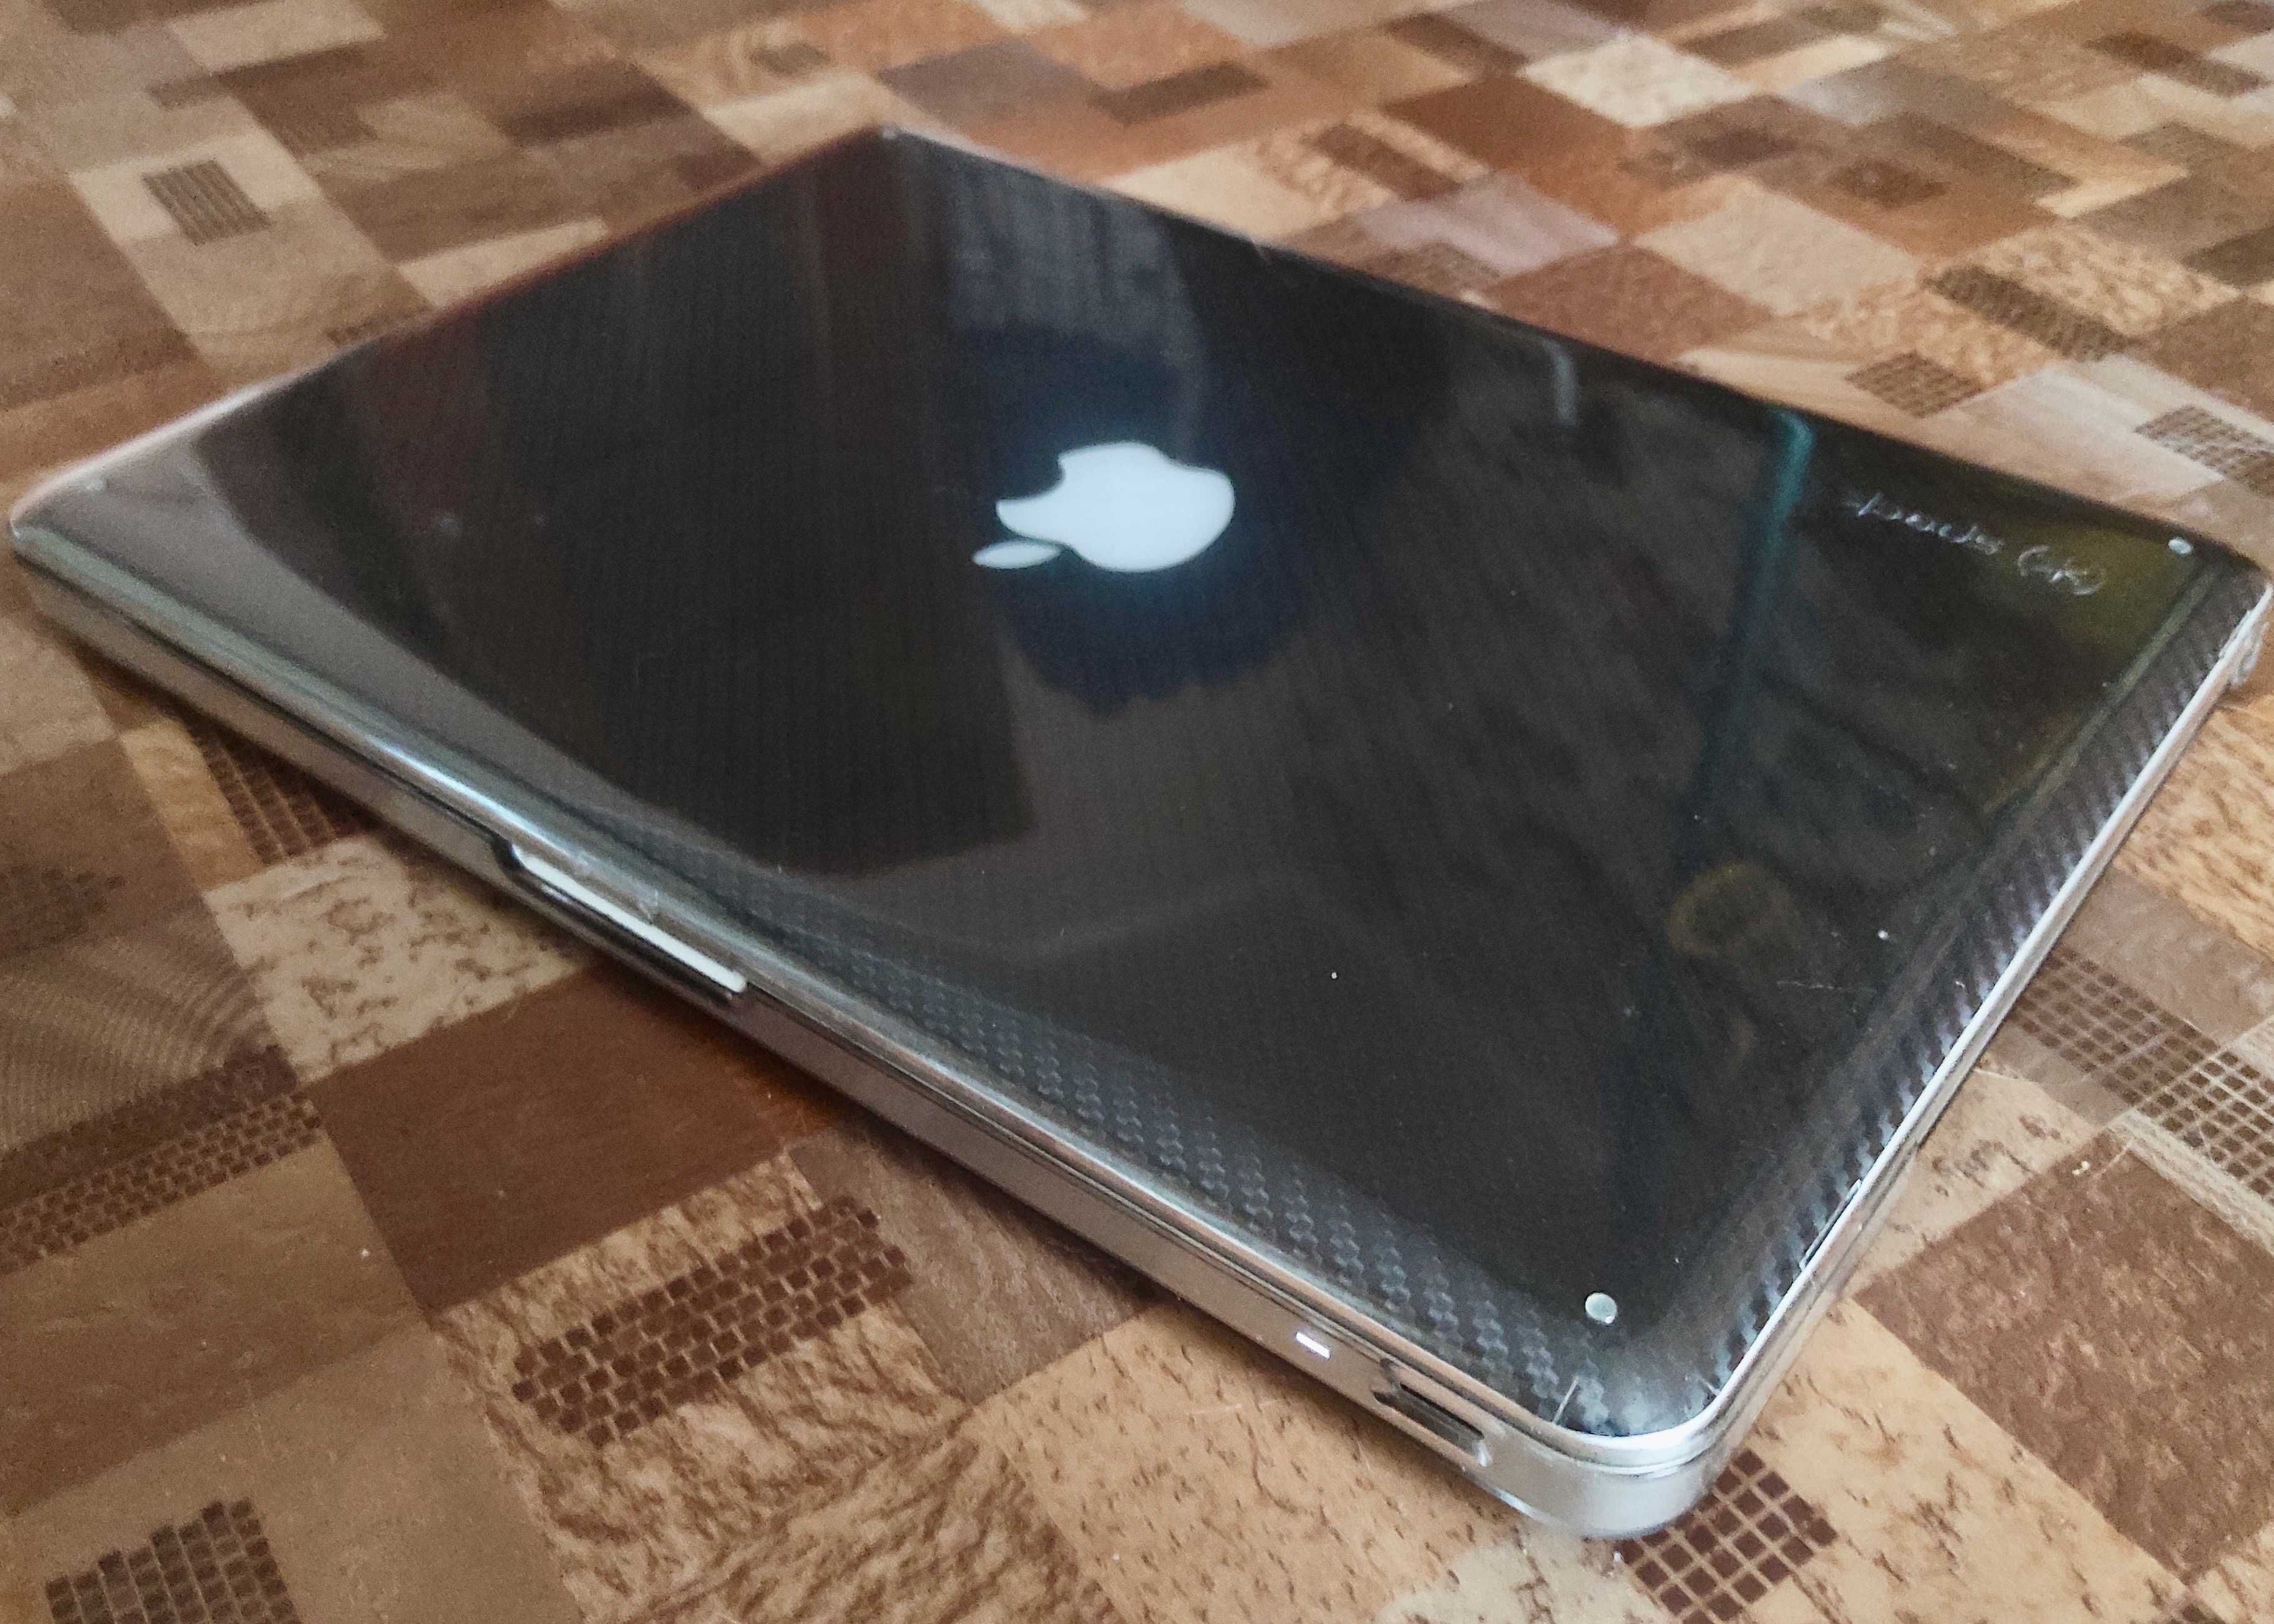 Macbook Pro 13"/2012/16Gb/250Gb+1Tb